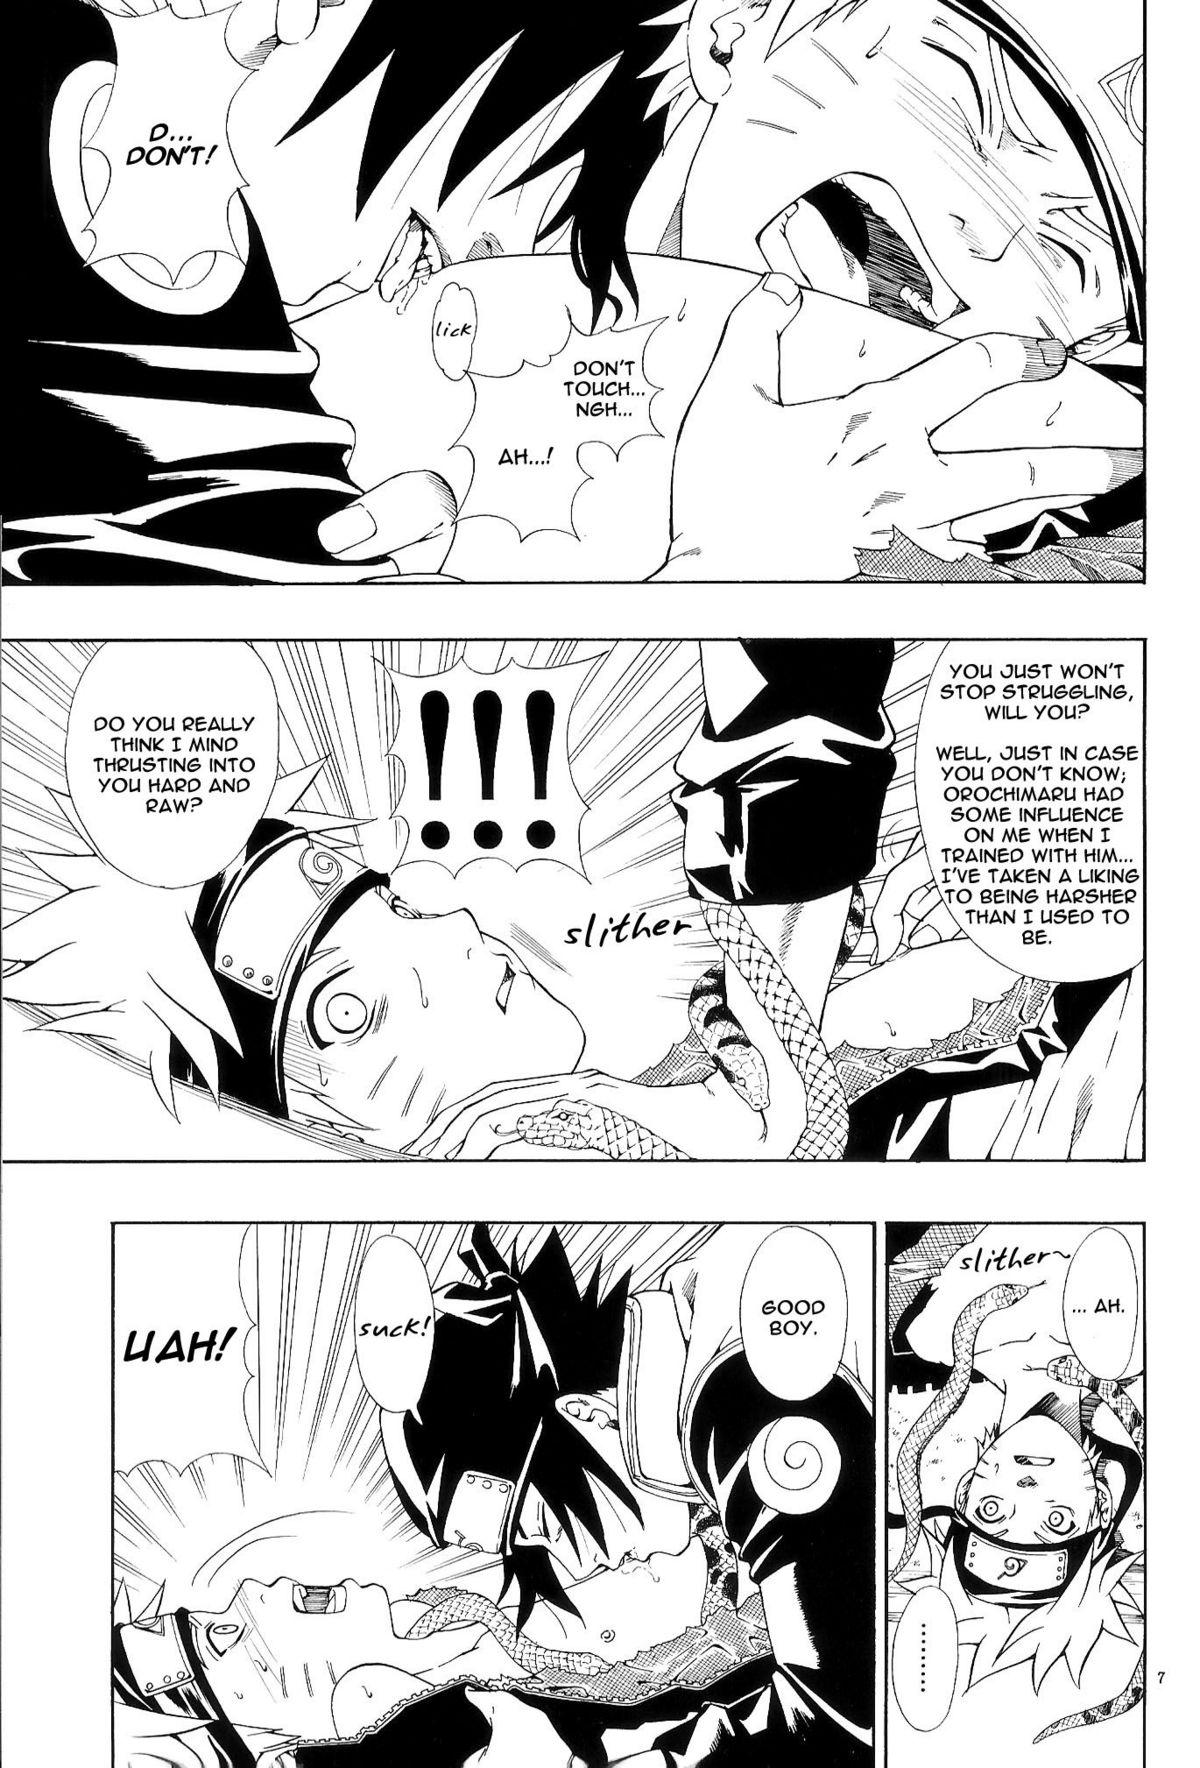 Foot Fetish ERO ERO²: Volume 1.5 (NARUTO) [Sasuke X Naruto] YAOI -ENG- - Naruto Pool - Page 6